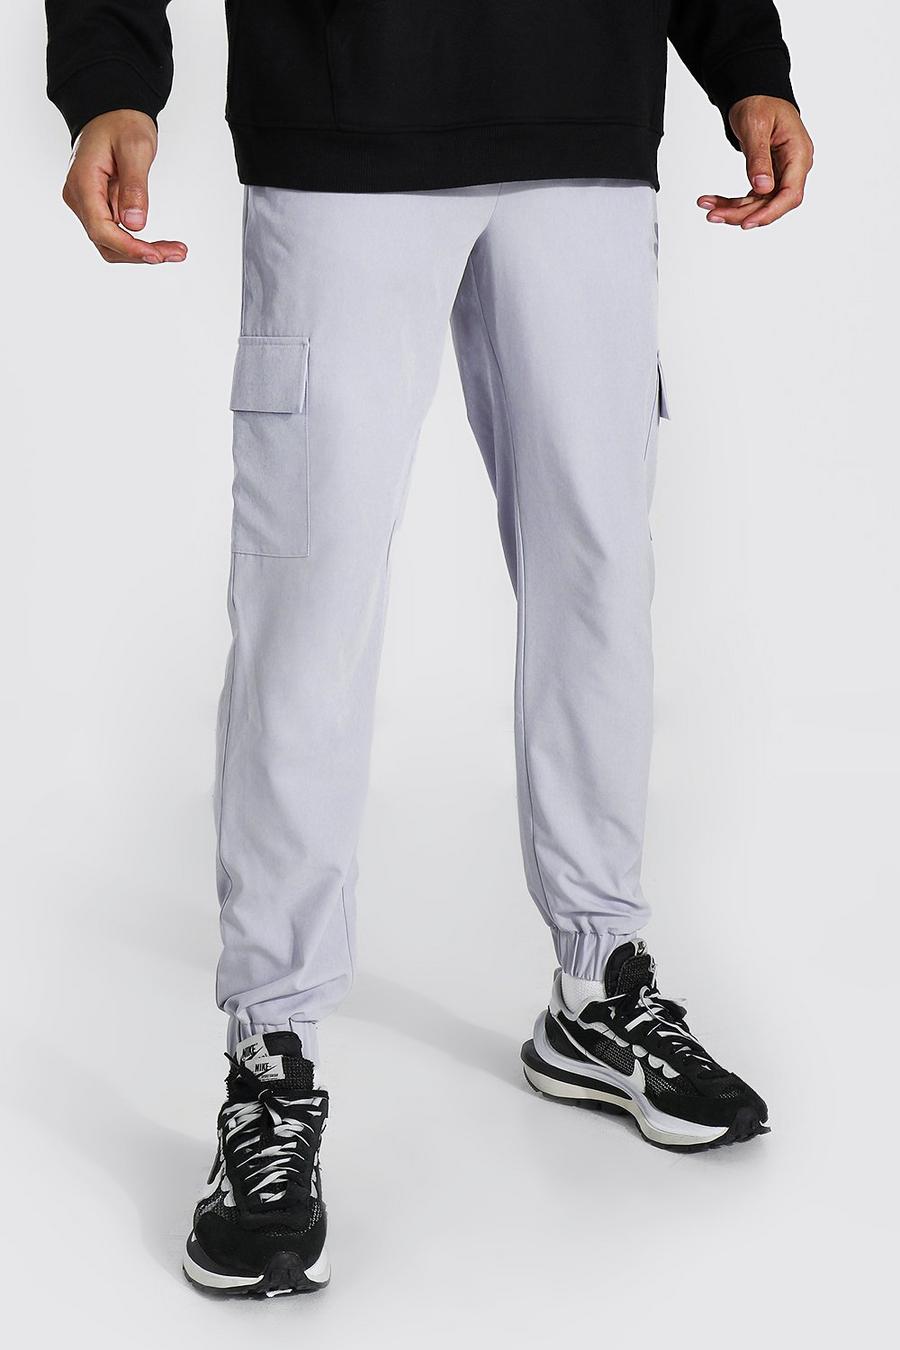 אפור כהה מכנסי ריצה דגמ"ח עם כיס עם רוכסן ובד מעטפת לגברים גבוהים image number 1